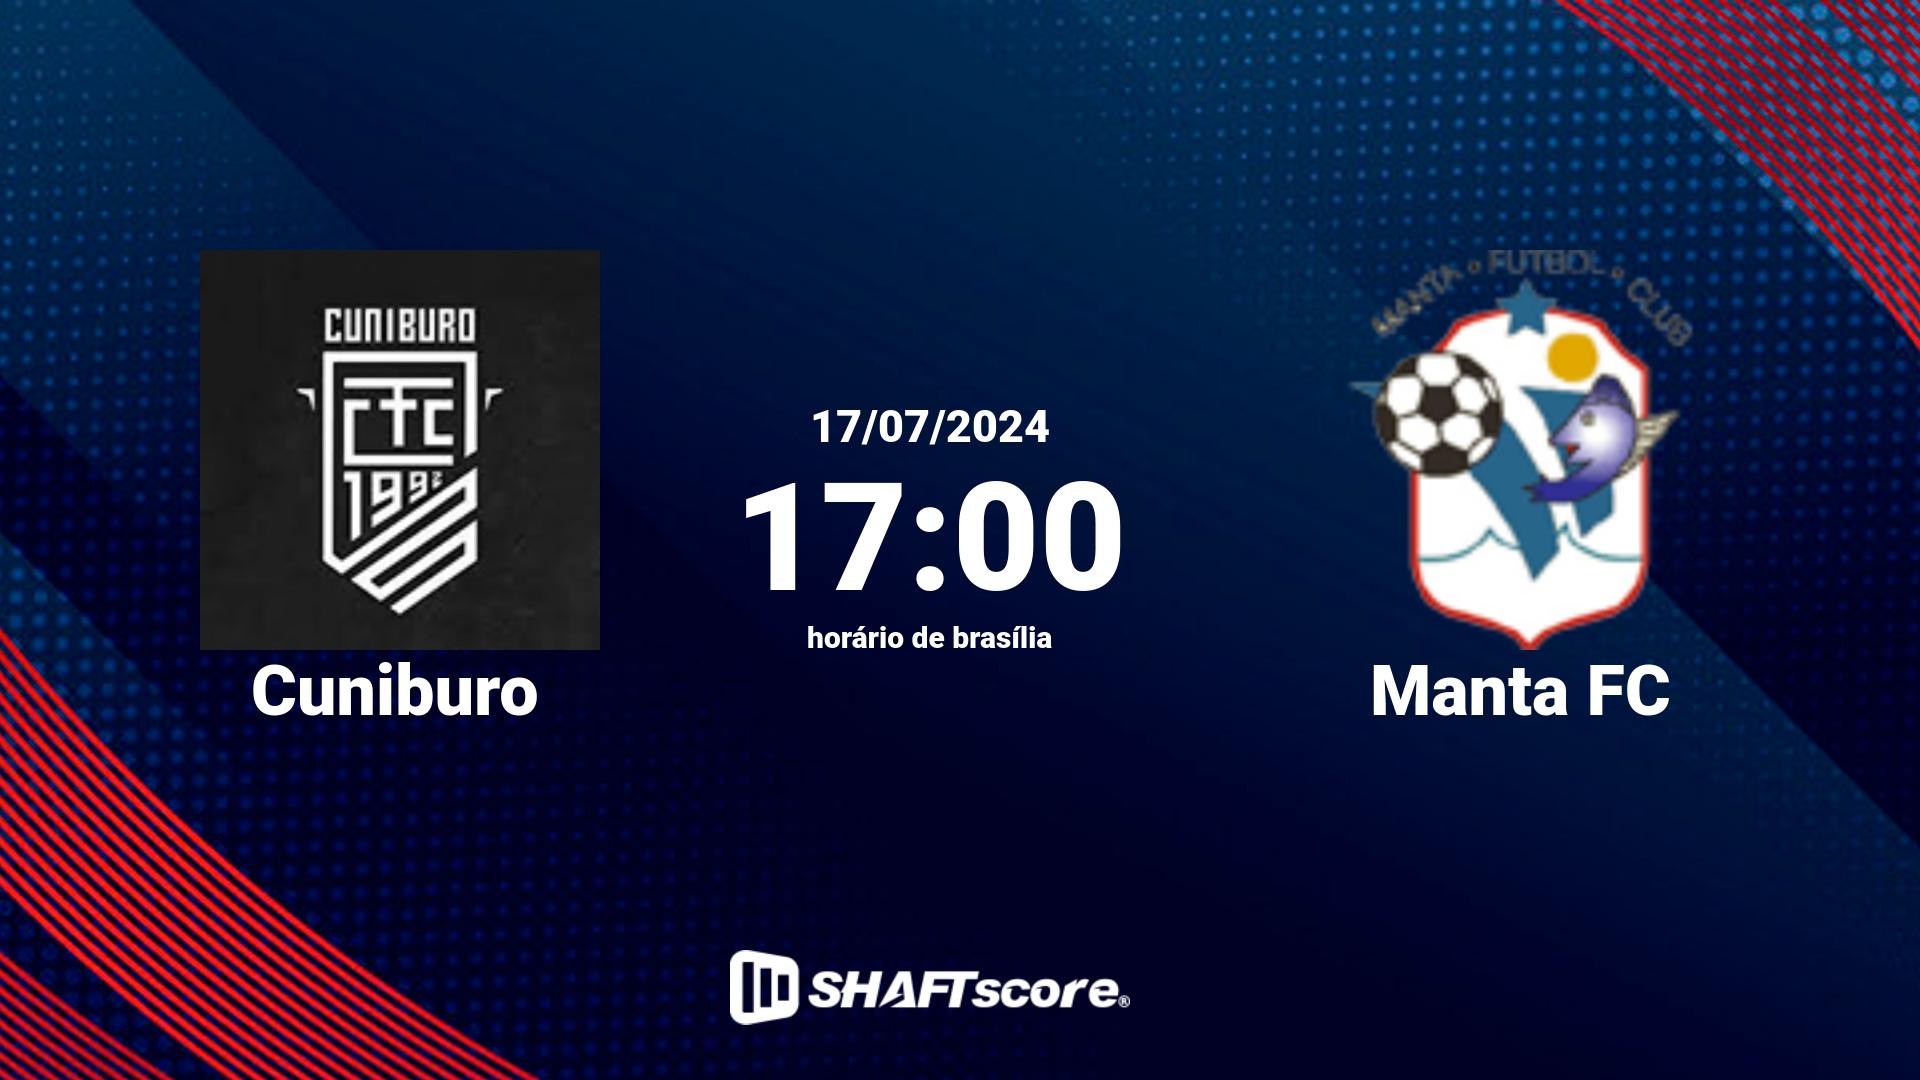 Estatísticas do jogo Cuniburo vs Manta FC 17.07 17:00